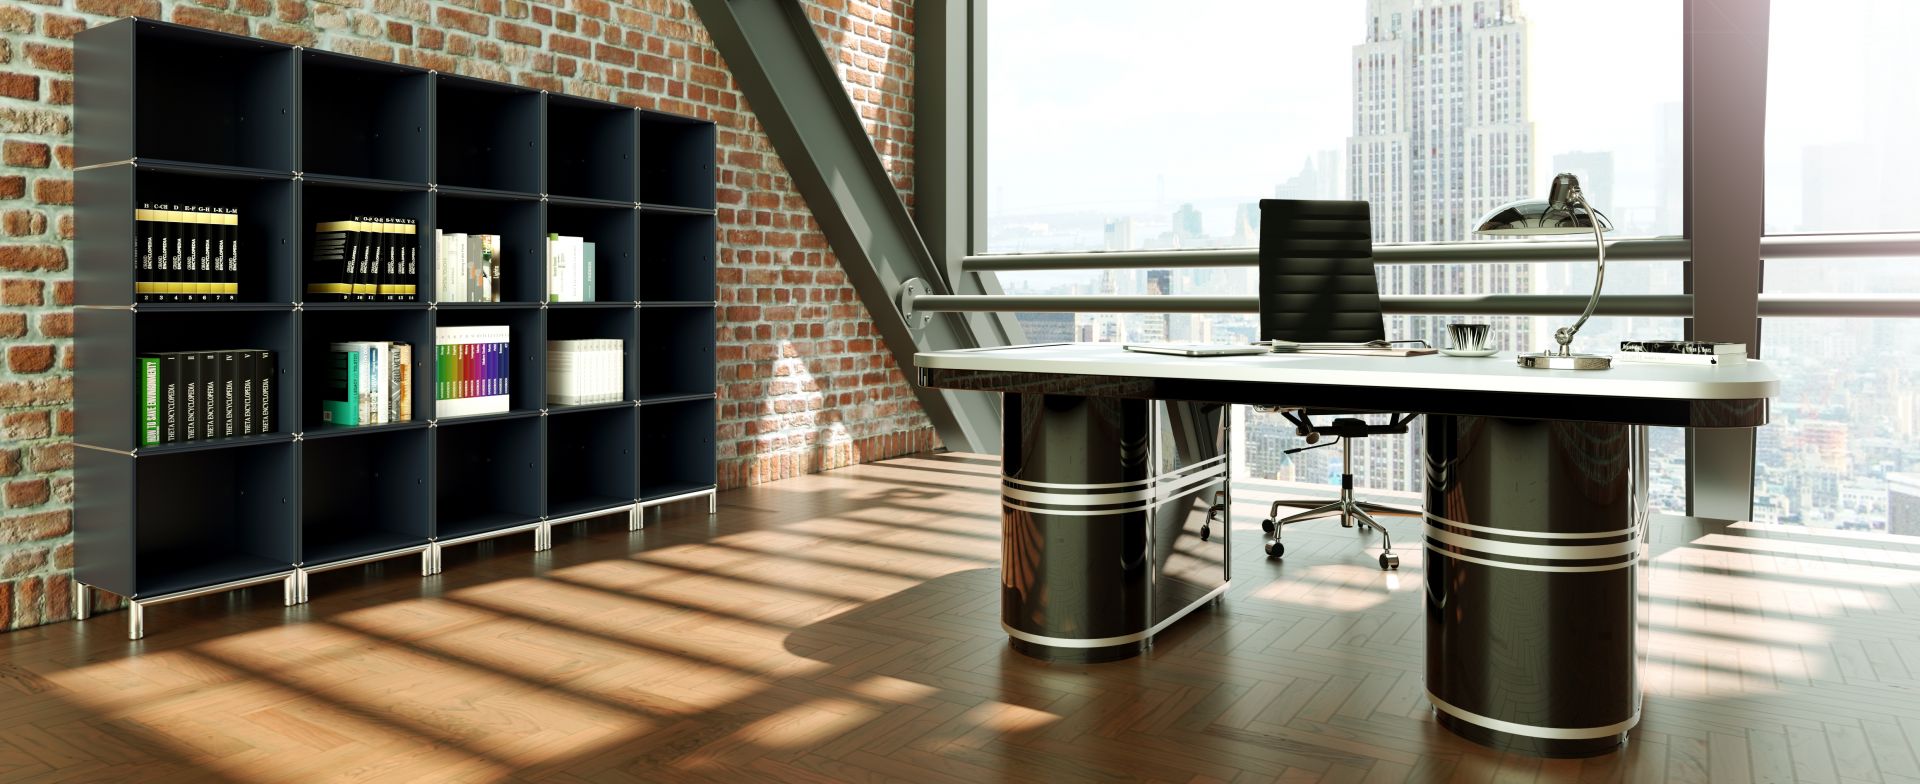 Duże biuro szefa wcale nie musi być zagracone, minimalistyczna przestrzeń lepiej oddaje prestiż firmy. Fot. Mauser